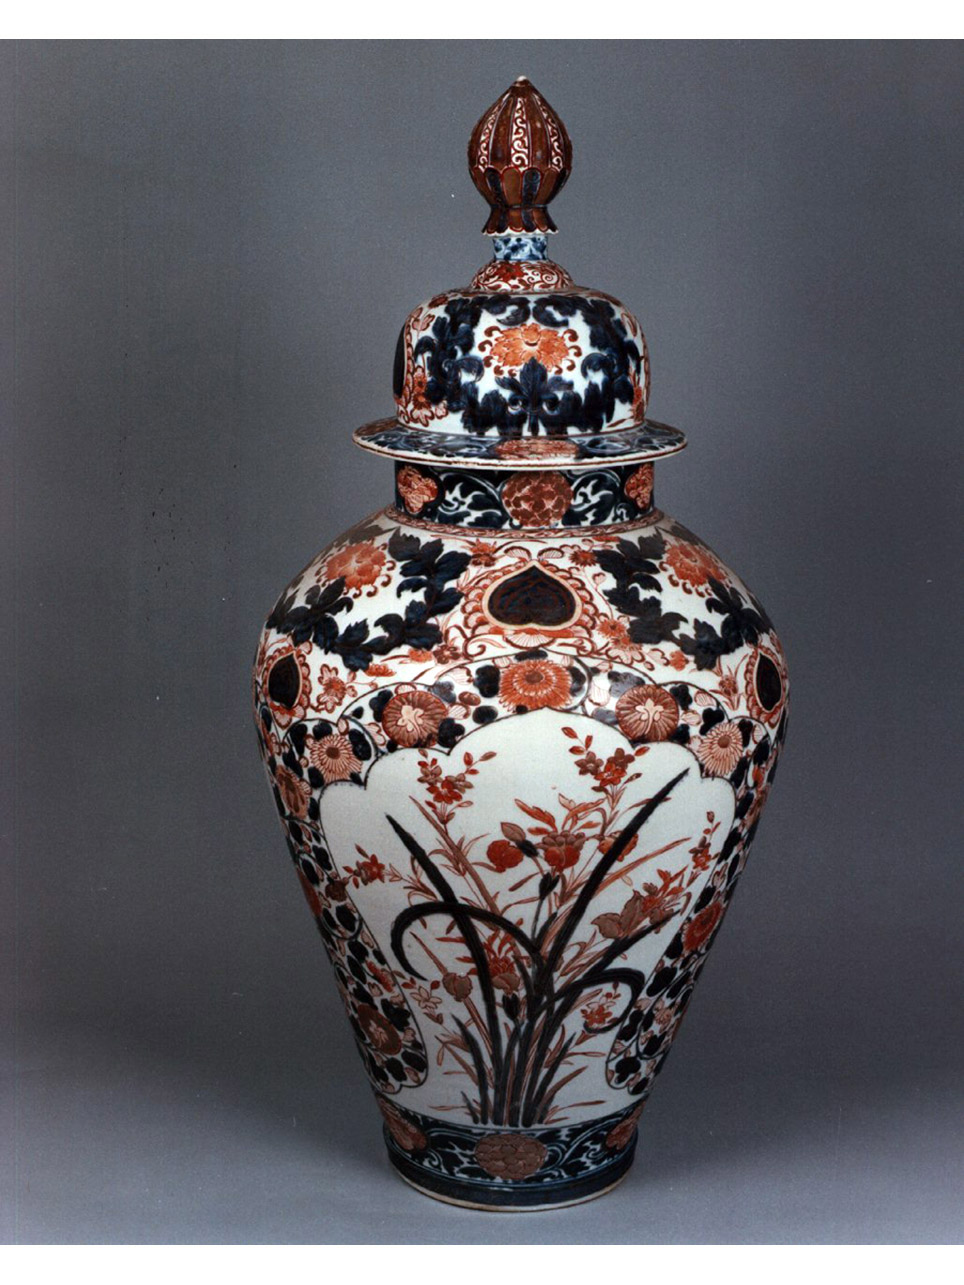 motivi decorativi floreali (vaso) - manifattura giapponese (secc. XVIII-XIX)